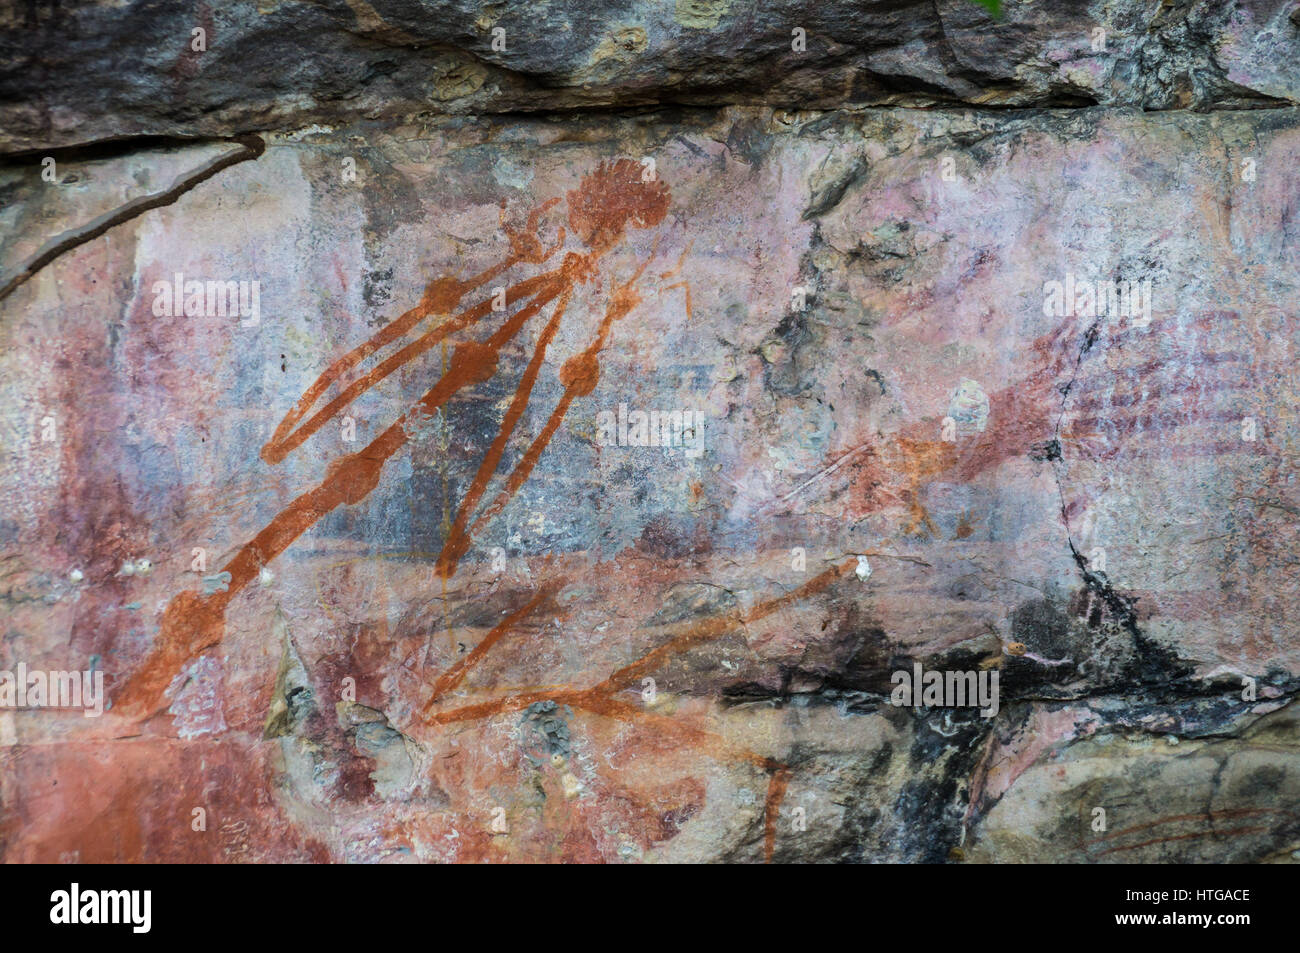 Dipinti aborigeni su roccia, il Parco Nazionale Kakadu, Territorio del Nord, l'Australia. Il dipinto è un avvertimento a non disturbare un luogo sacro e minacciano Foto Stock